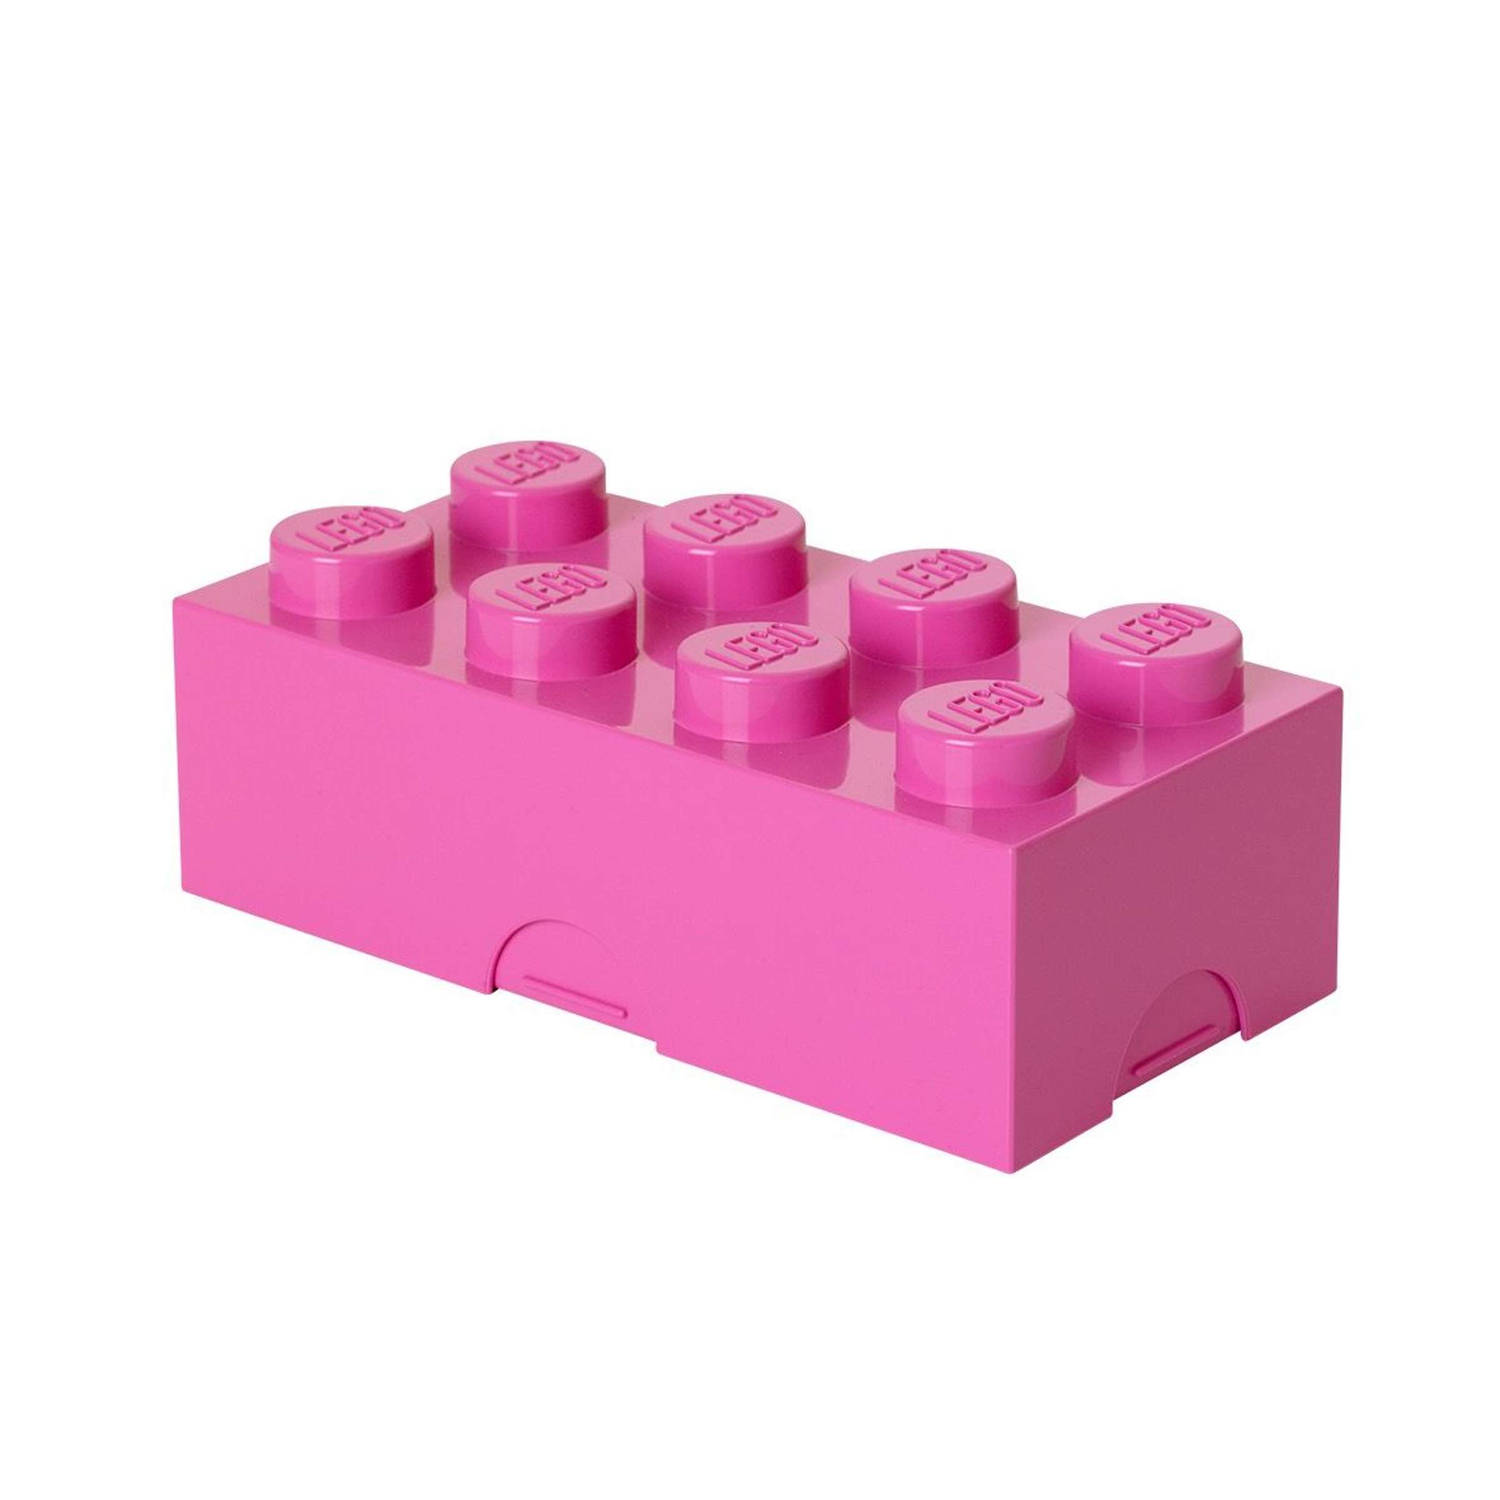 Lunchbox lego